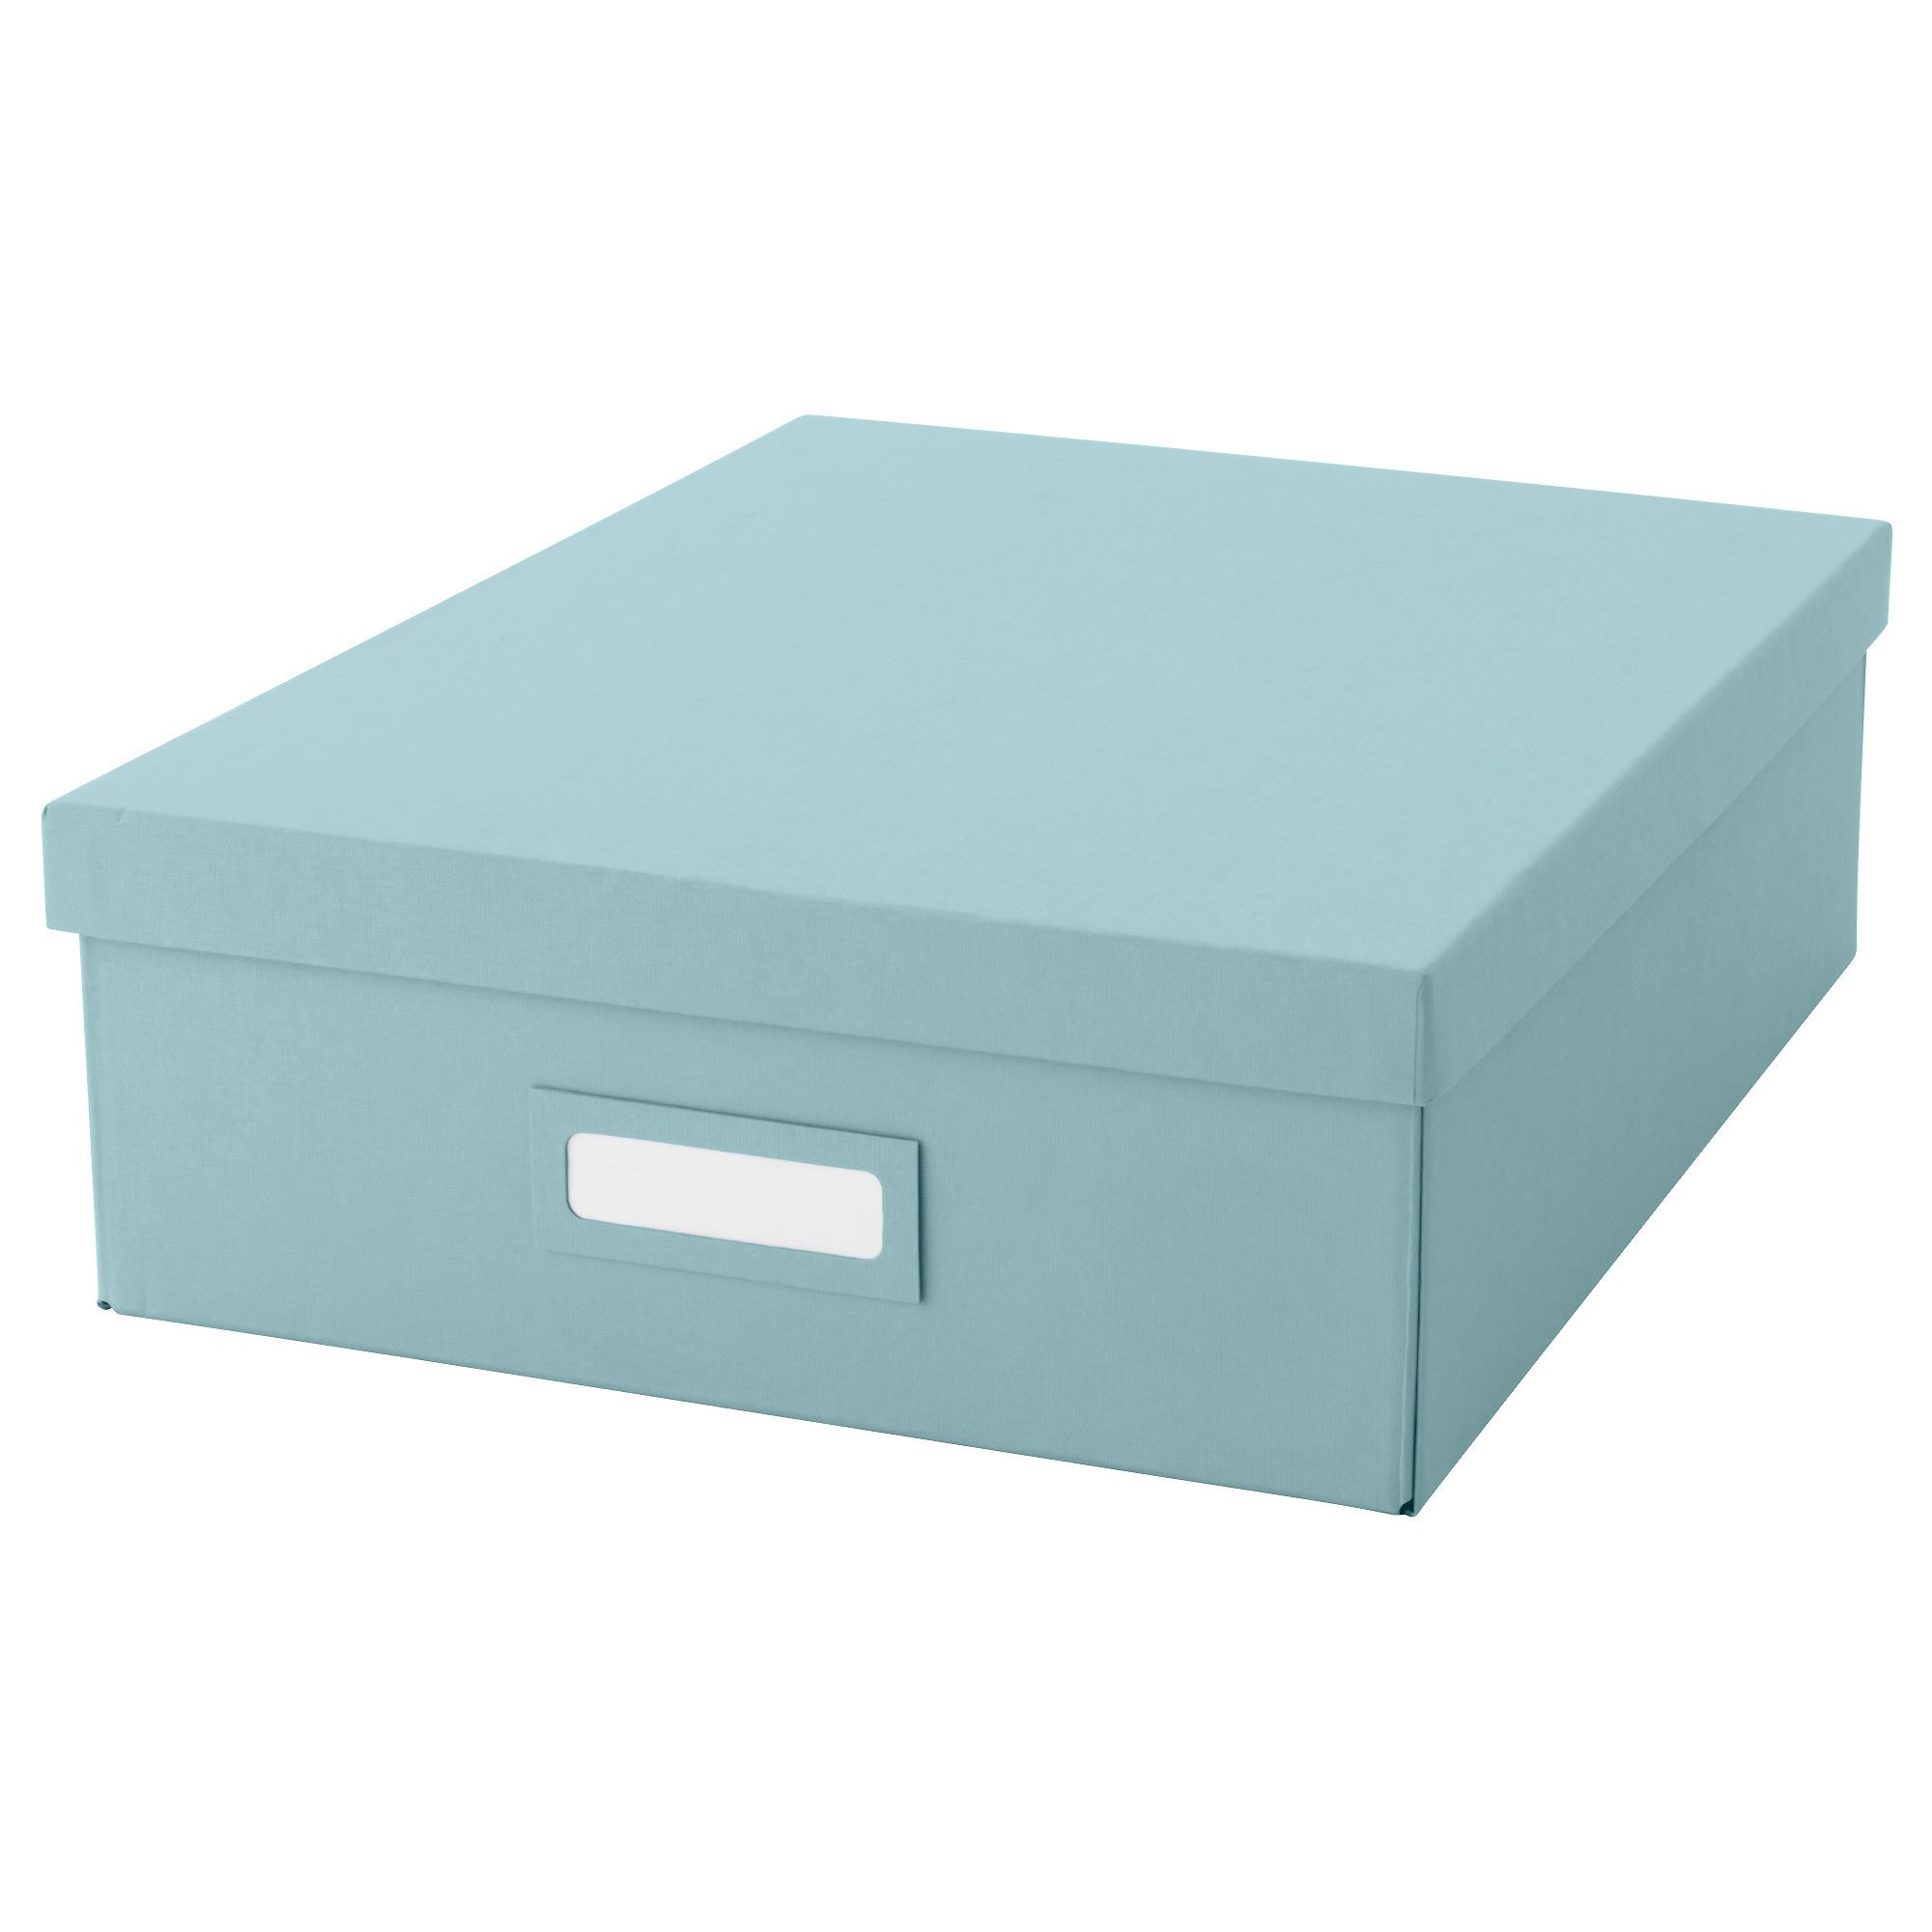 TJENA bölmeli kutu açık mavi 27x35x10 cm IKEA Ev Düzenleme